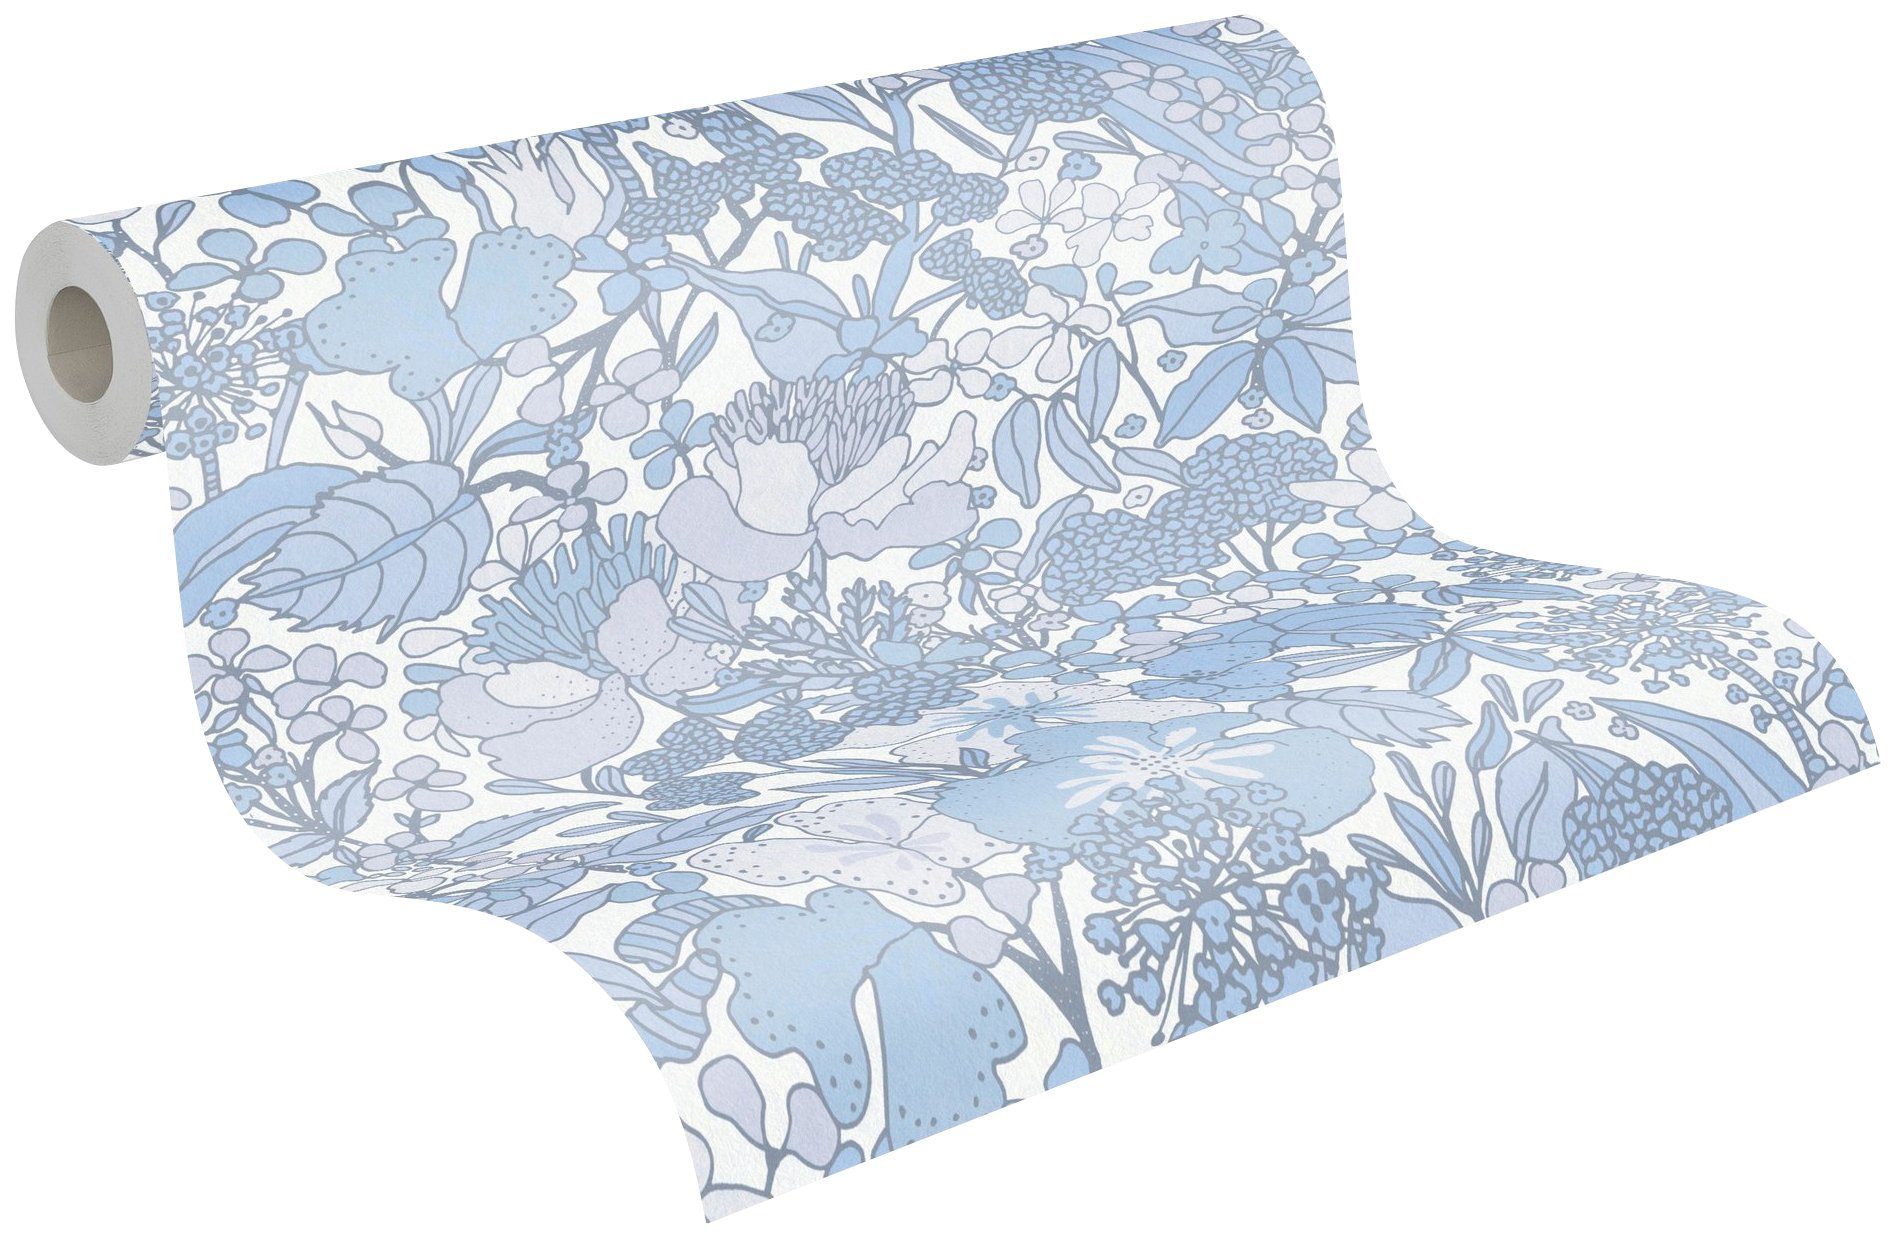 Création Floral Tapete Impression, floral, grau/blau/weiß Architects glatt, A.S. Vliestapete Dschungel Blumentapete botanisch, Paper